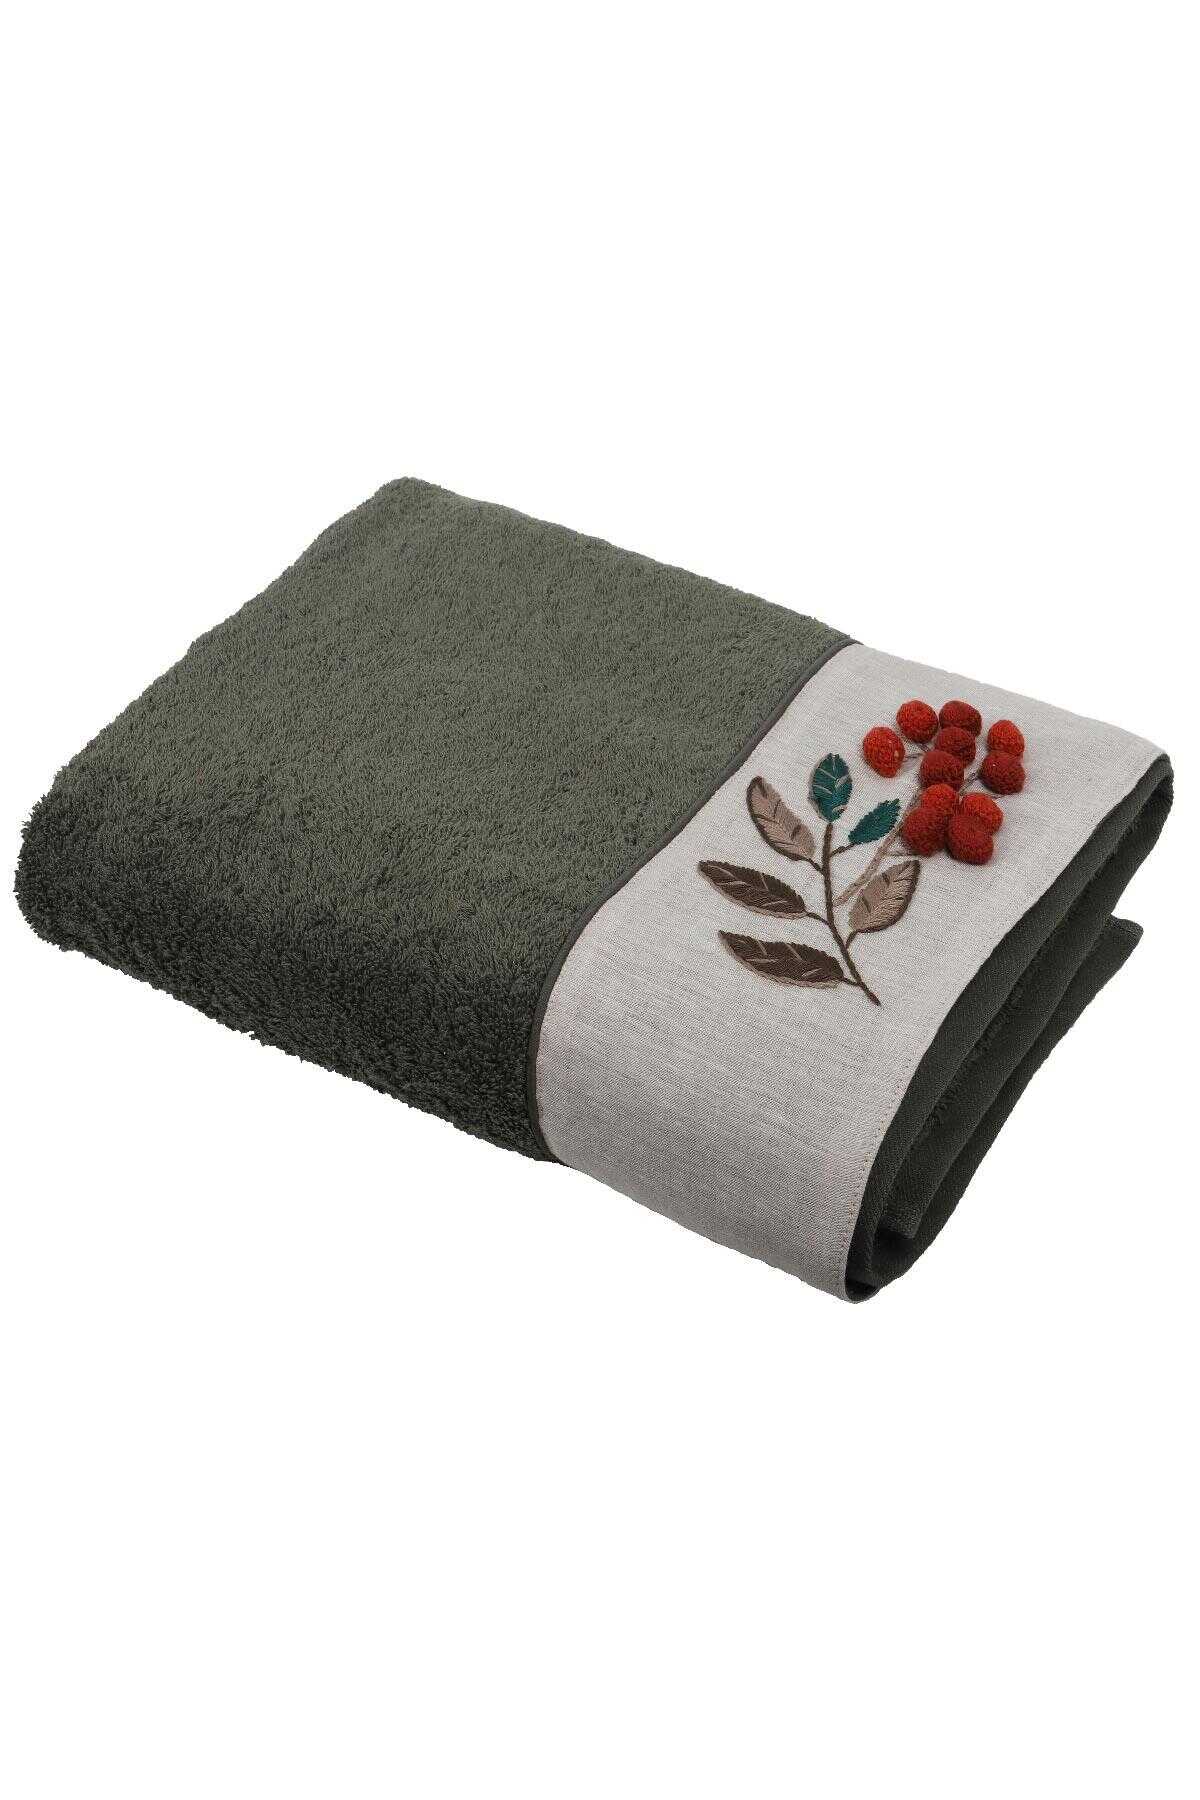 Ecocotton Duru Cotton Woman's Bath Towel 